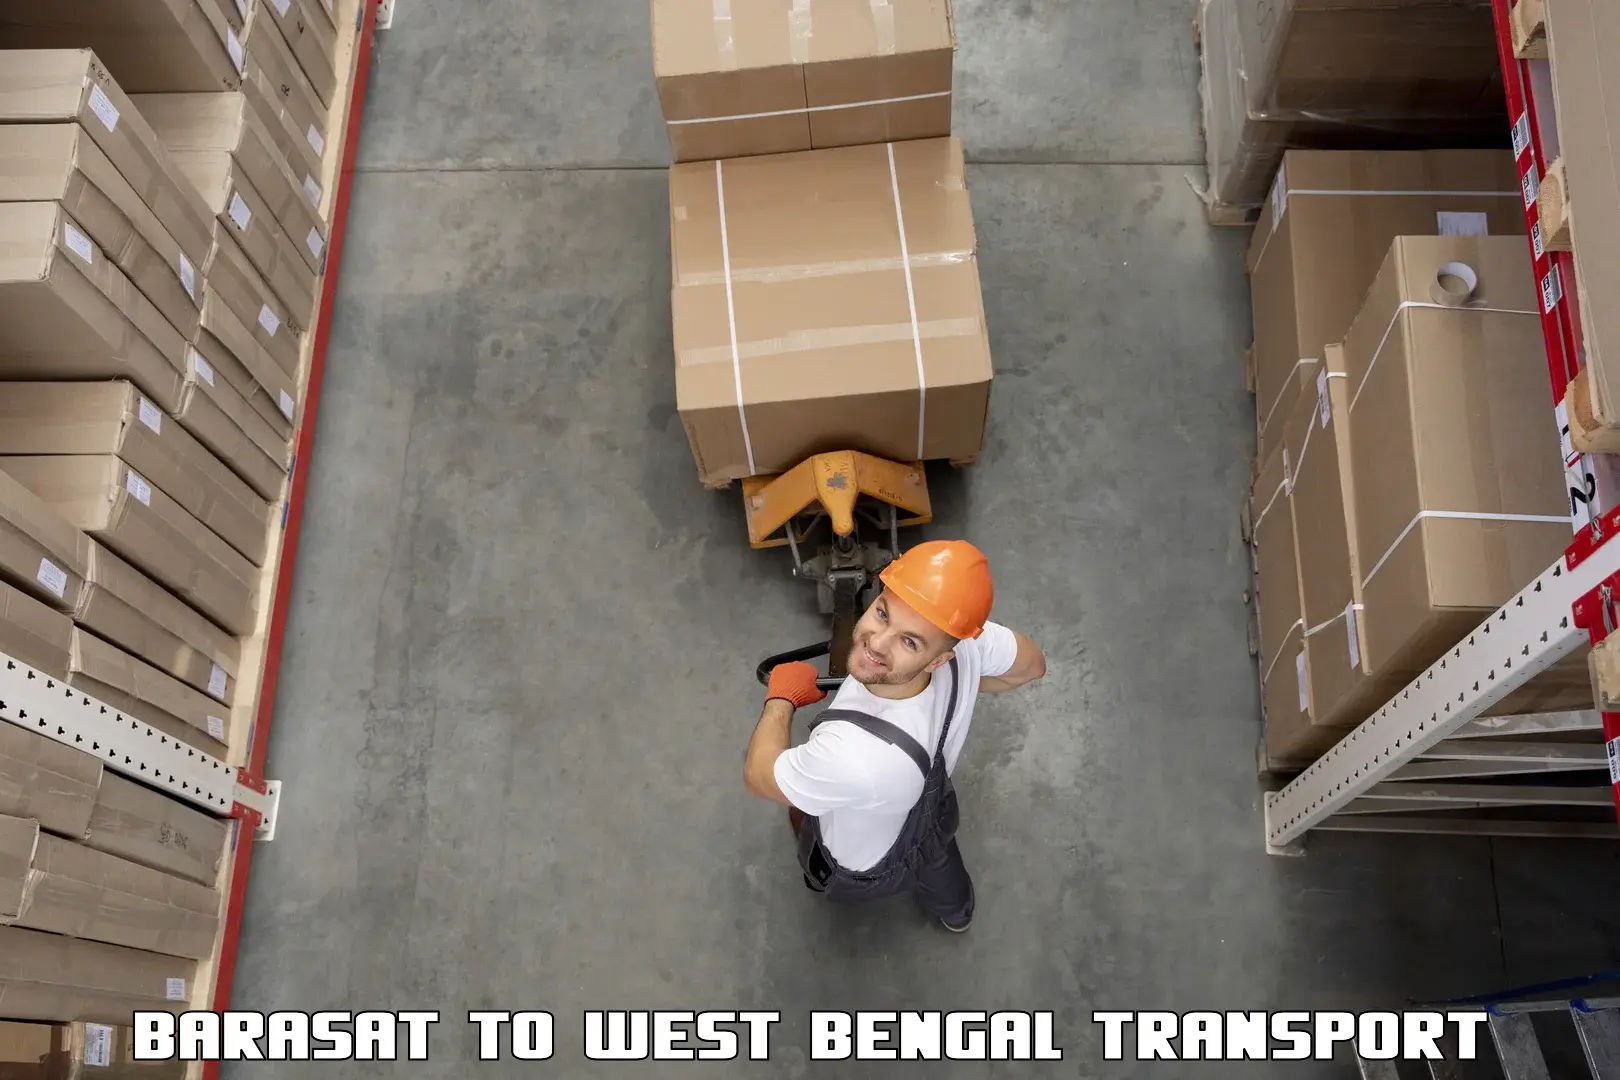 Commercial transport service Barasat to Panskura